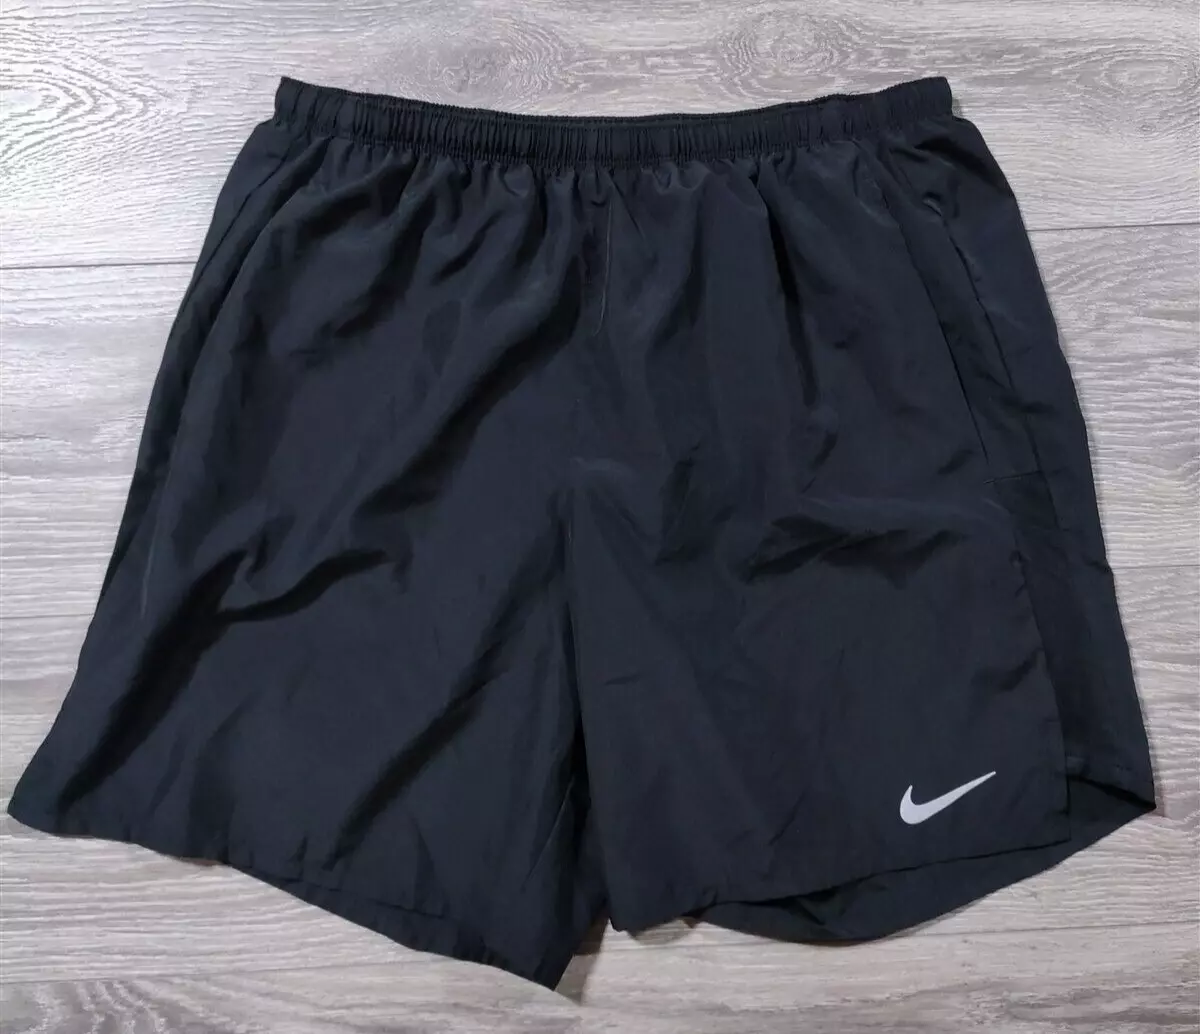 Nike Shorts Mens ? Athletic Back Pocket Brief Liner Black Bottoms